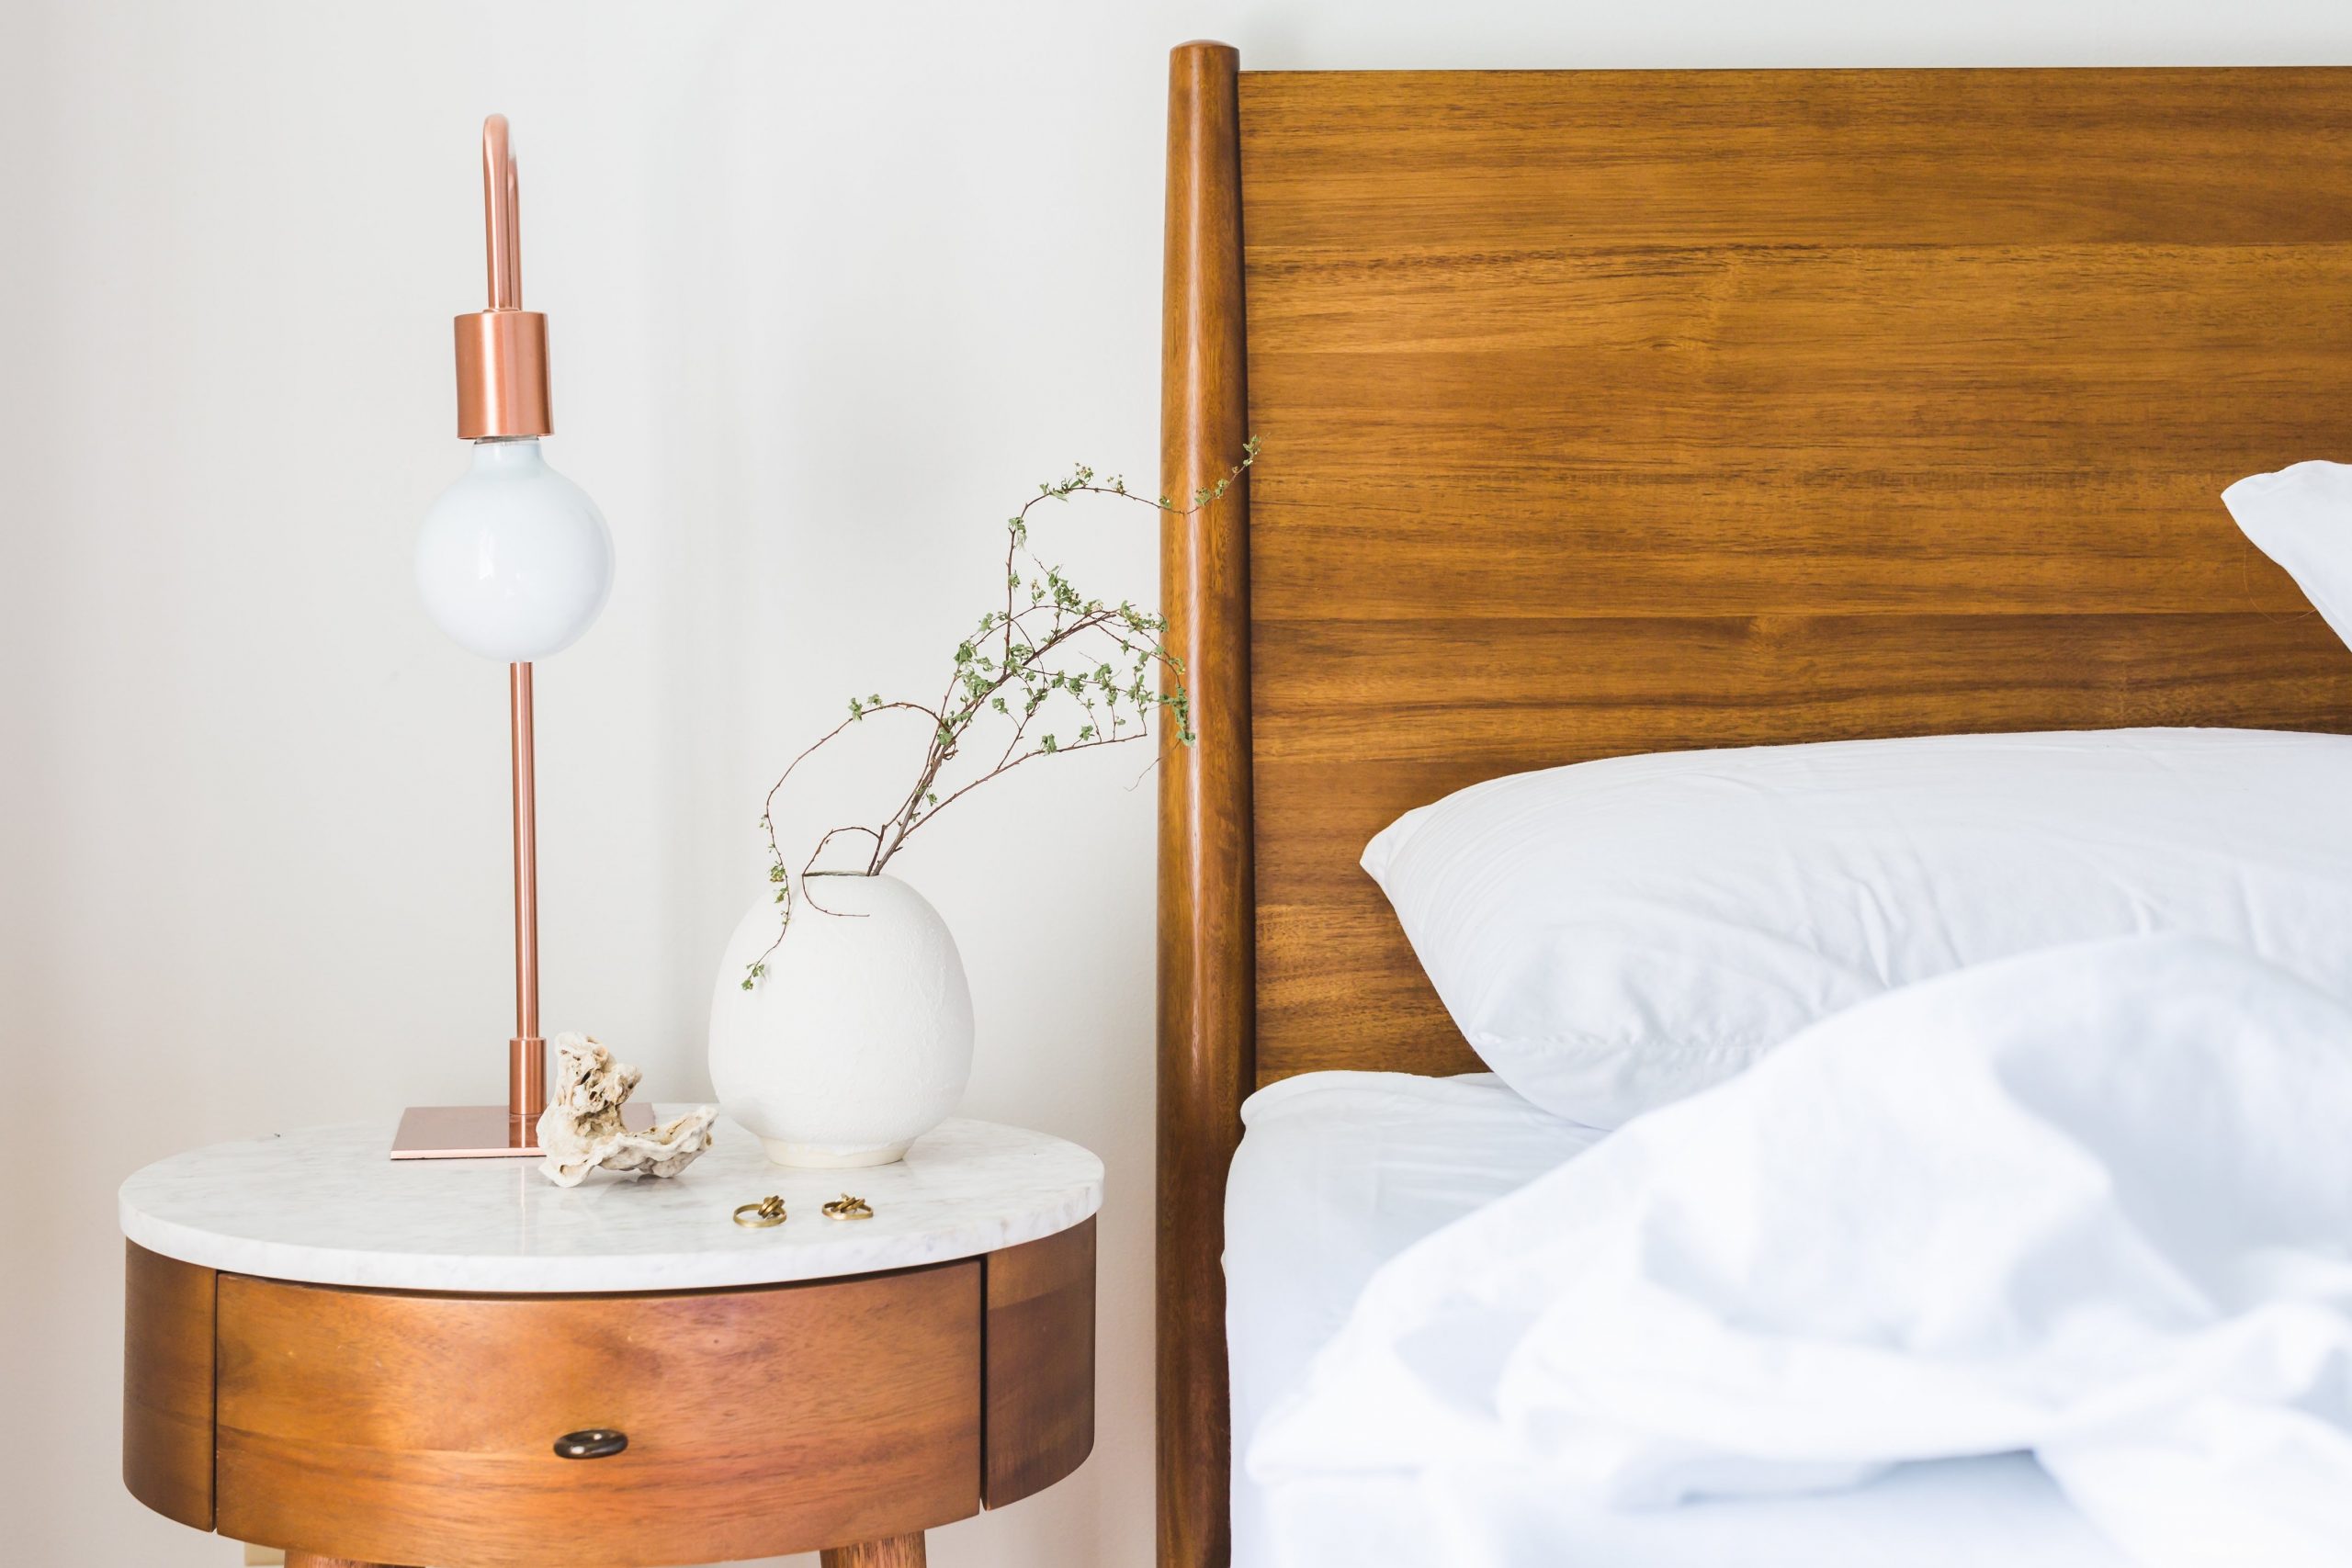 Drewno w sypialni — jakie wybrać?